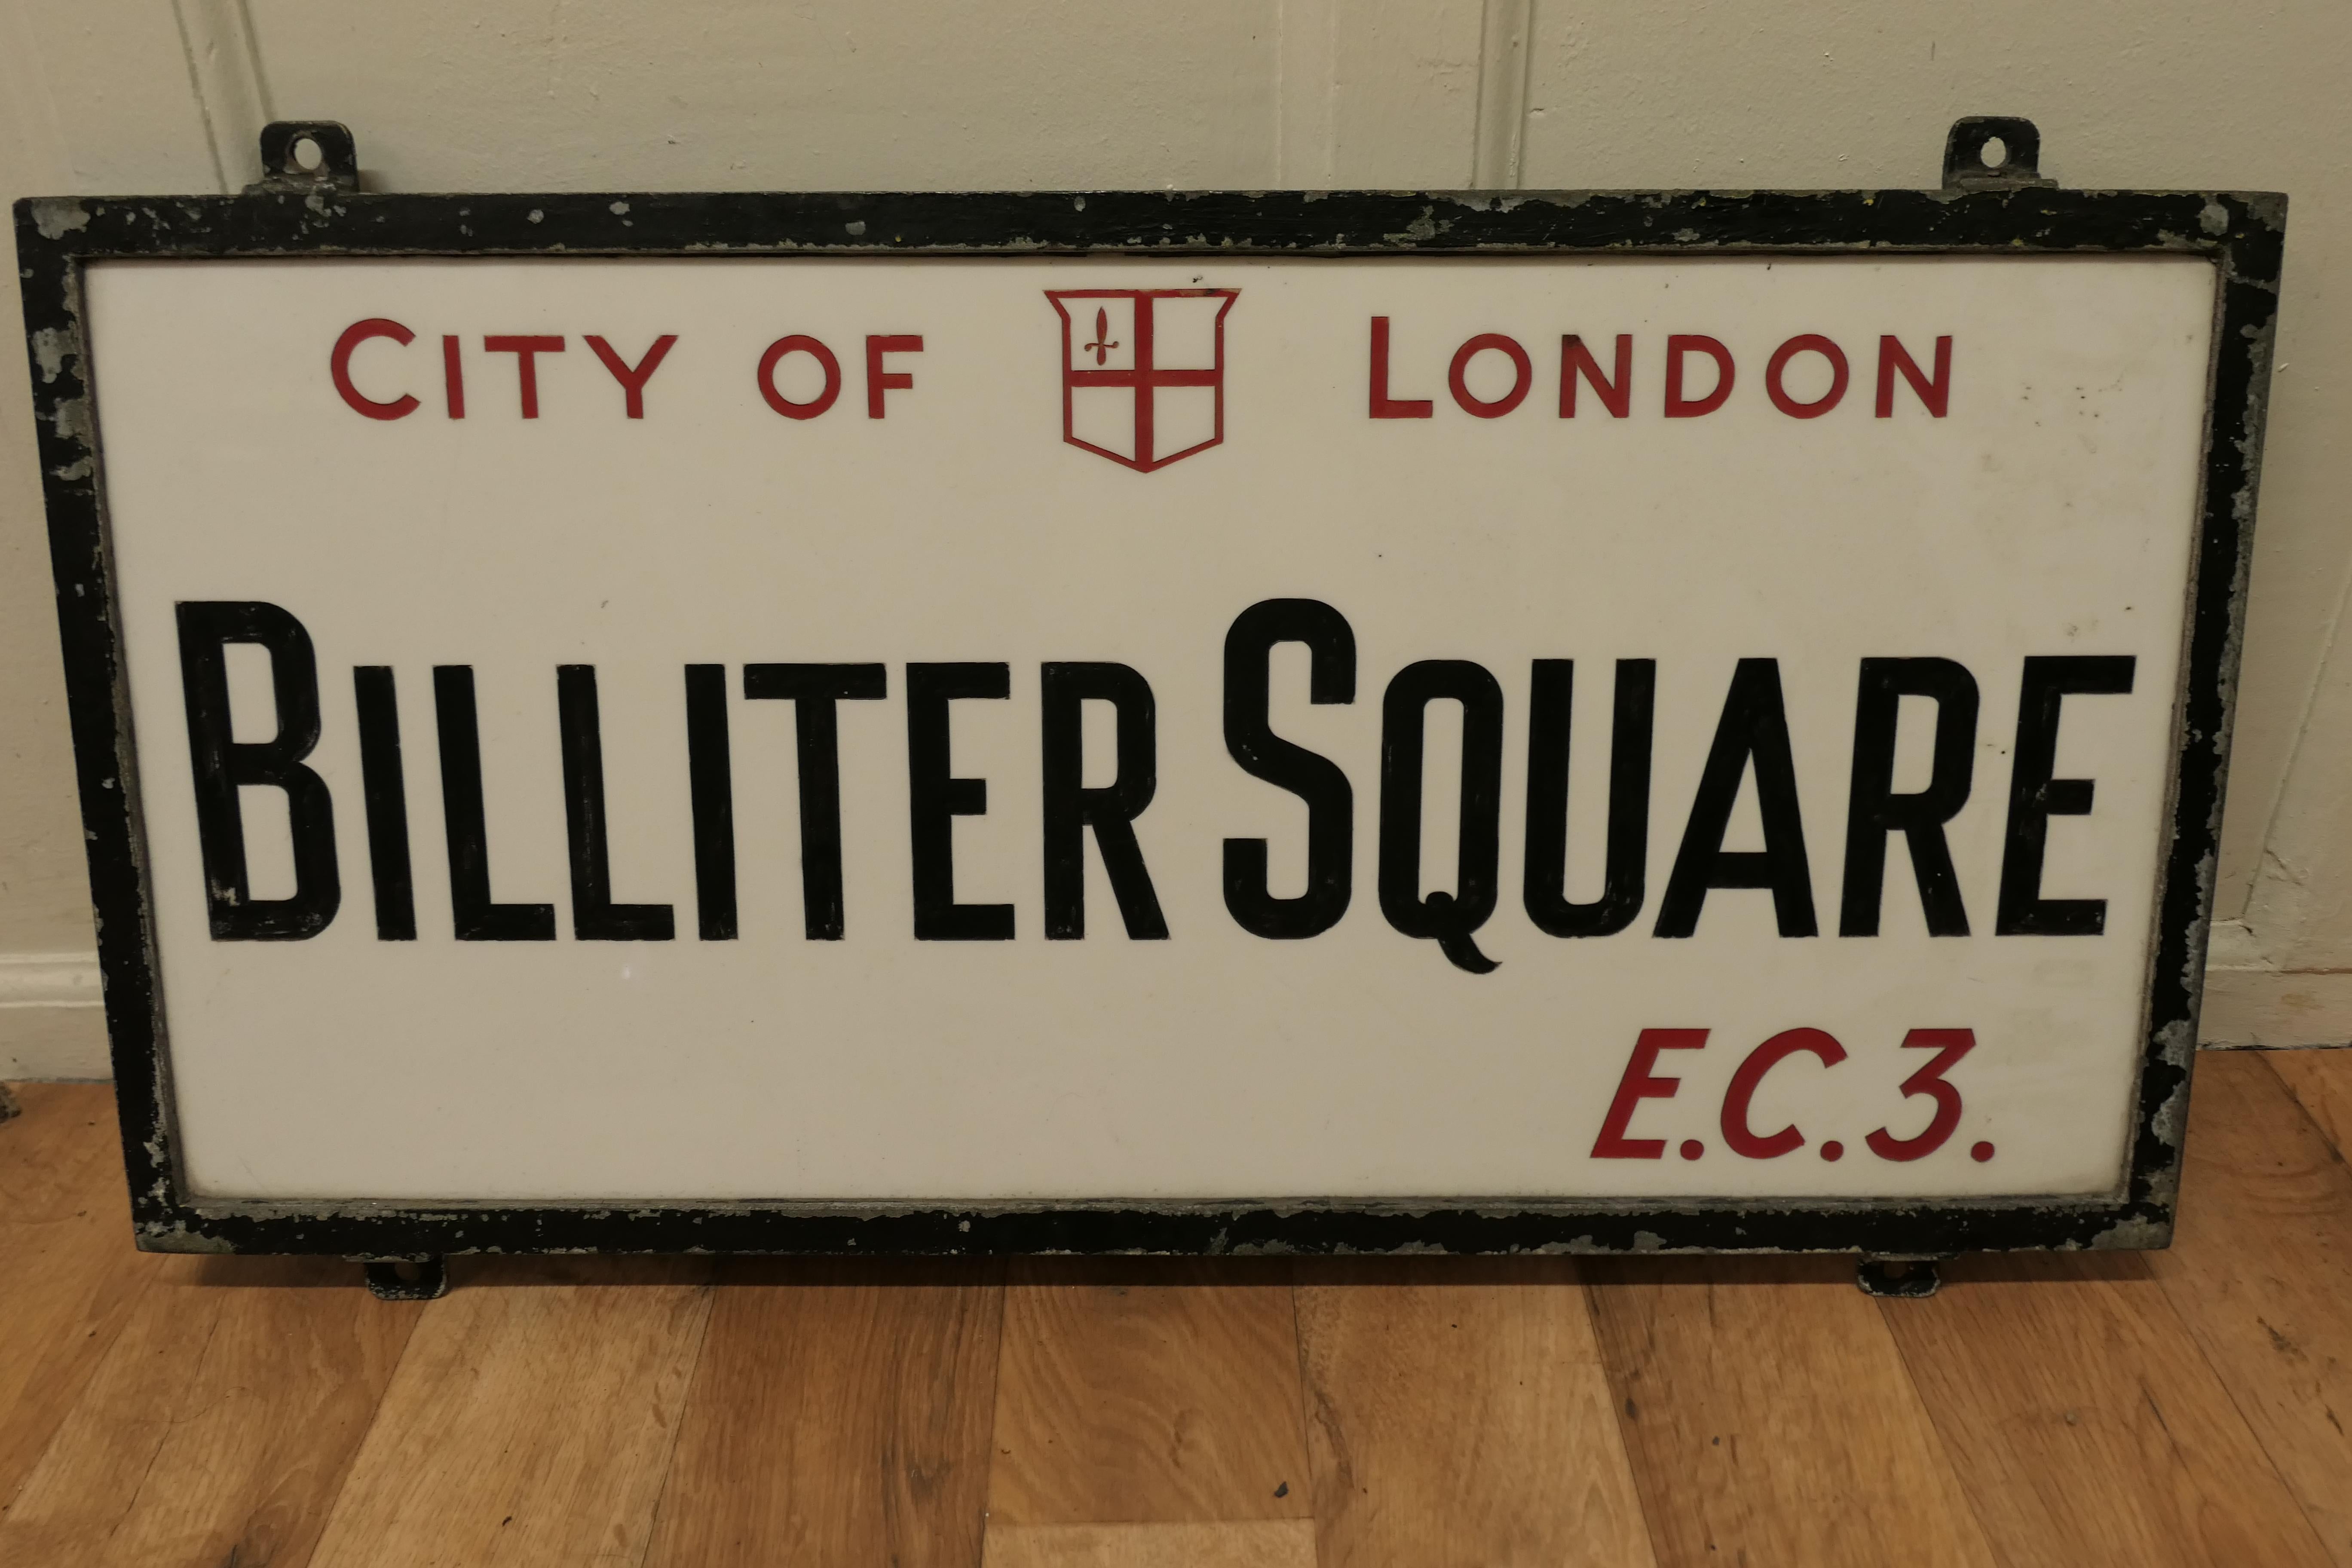 Plaque de rue édouardienne en verre de la ville de Londres, Bilter Square E.C.3

Il s'agit d'une plaque de rue de la ville de Londres, elle est placée dans son cadre en fonte, elle est faite en verre Vitrolite gravé, la ville de Londres et E.C.3